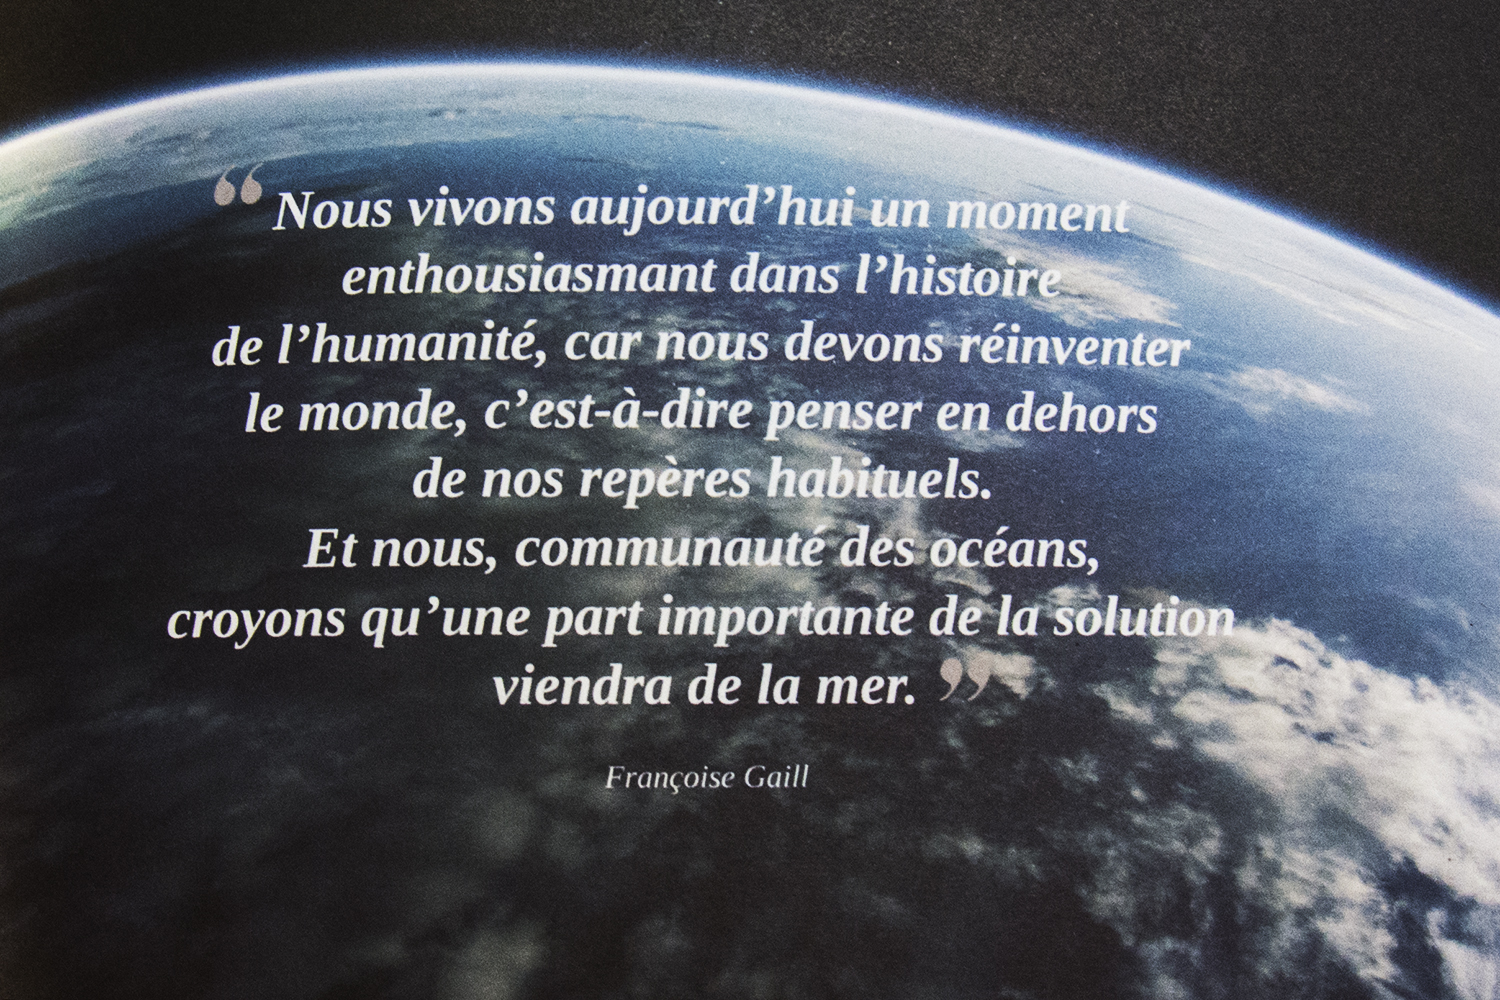 Citation de Françoise Gaill dans La Lettre d’information de l’Institut océanographique Paul Ricard.